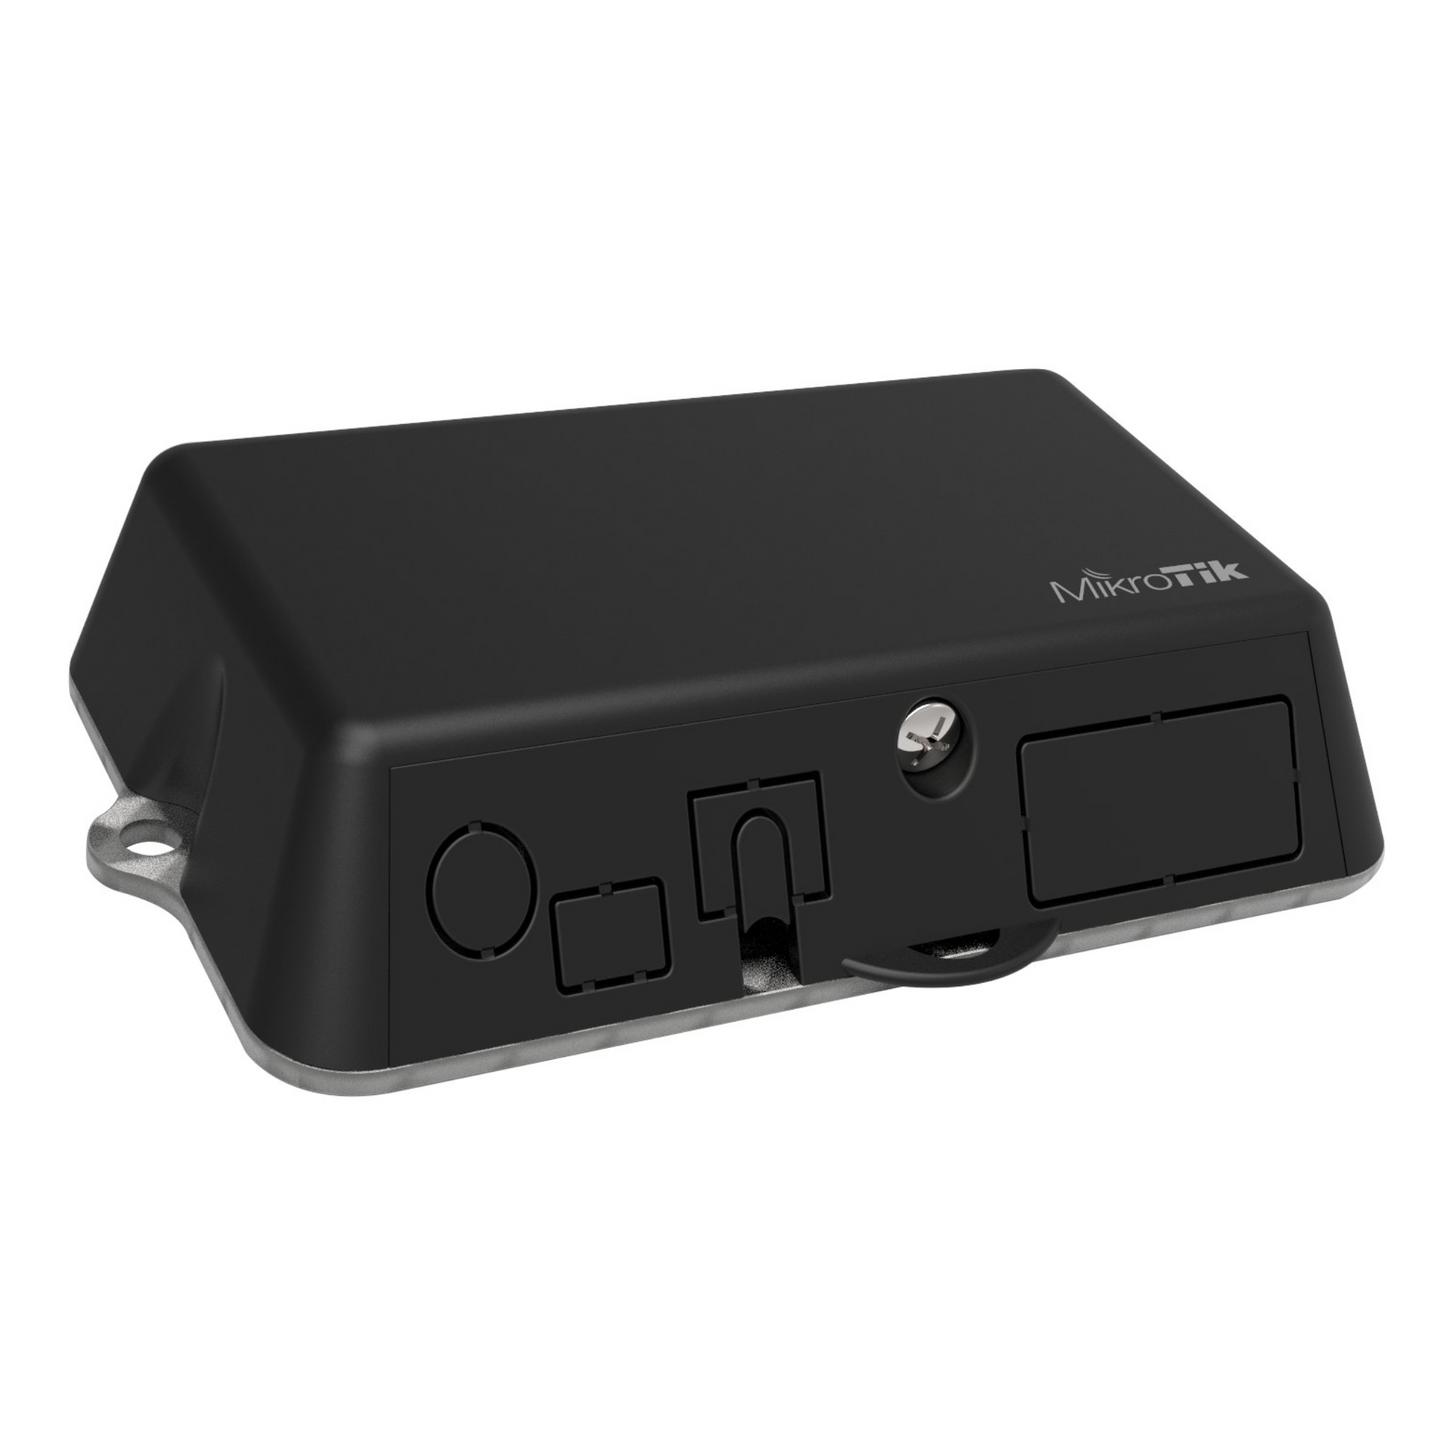 MikroTik LtAP Mini LTE Access Point Kit (RB912R-2nD-LTm&R11e-LTE)